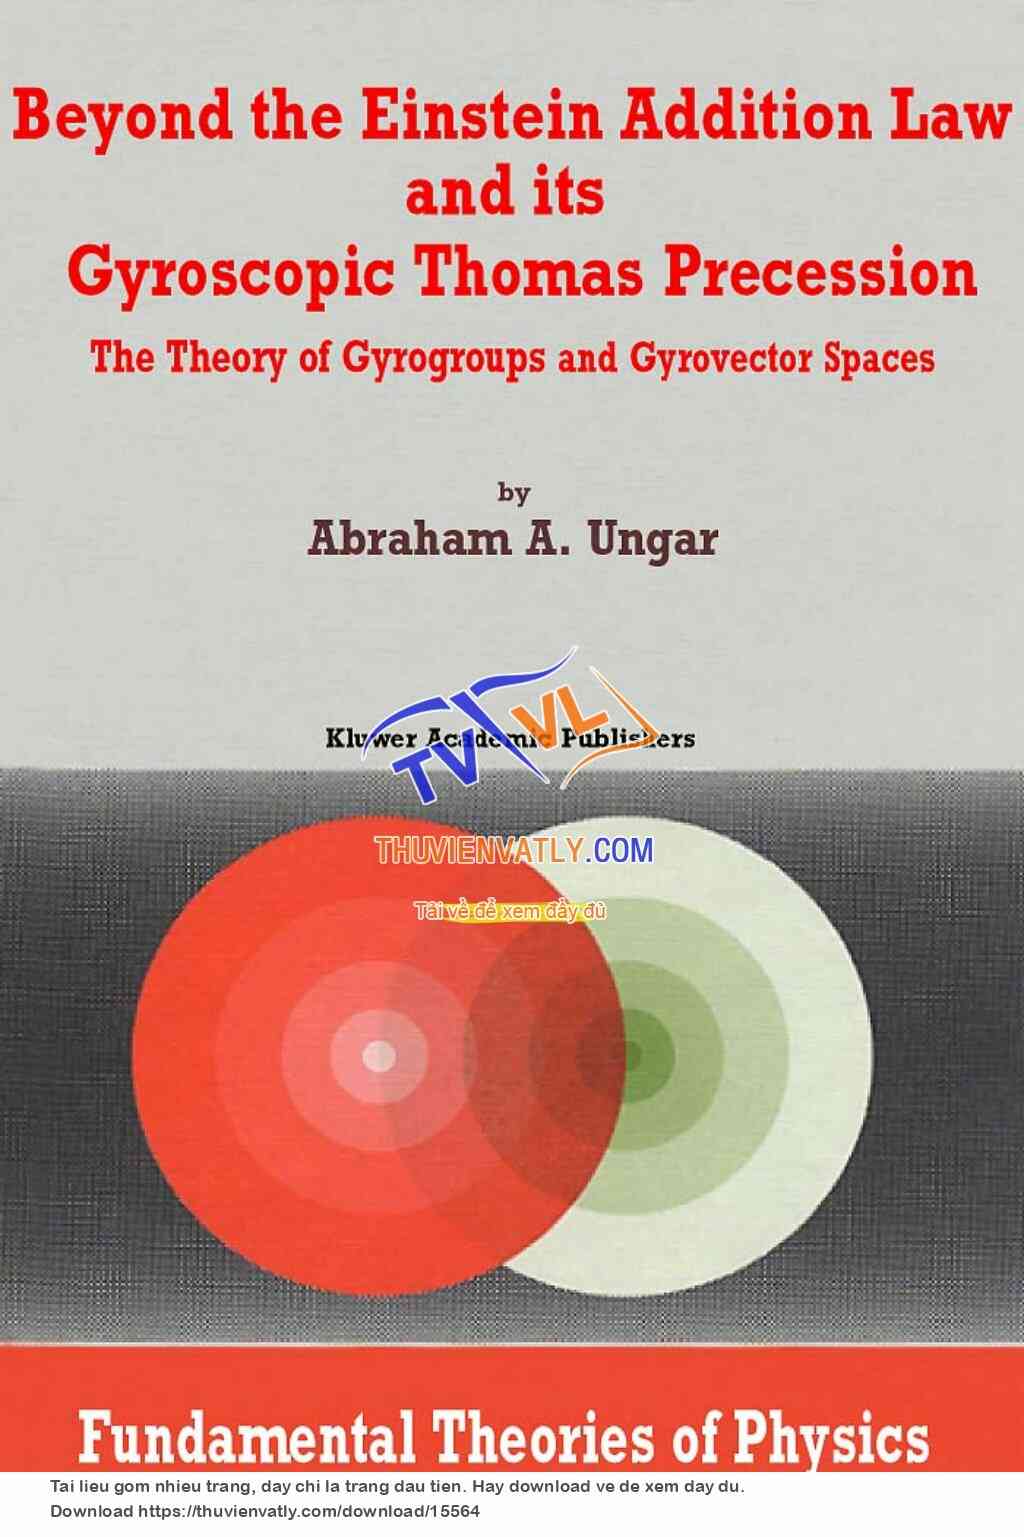 Beyond the Einstein Addition Law, its Gyroscopic Thomas Precession - A. Ungar (Kluwer, 2002)